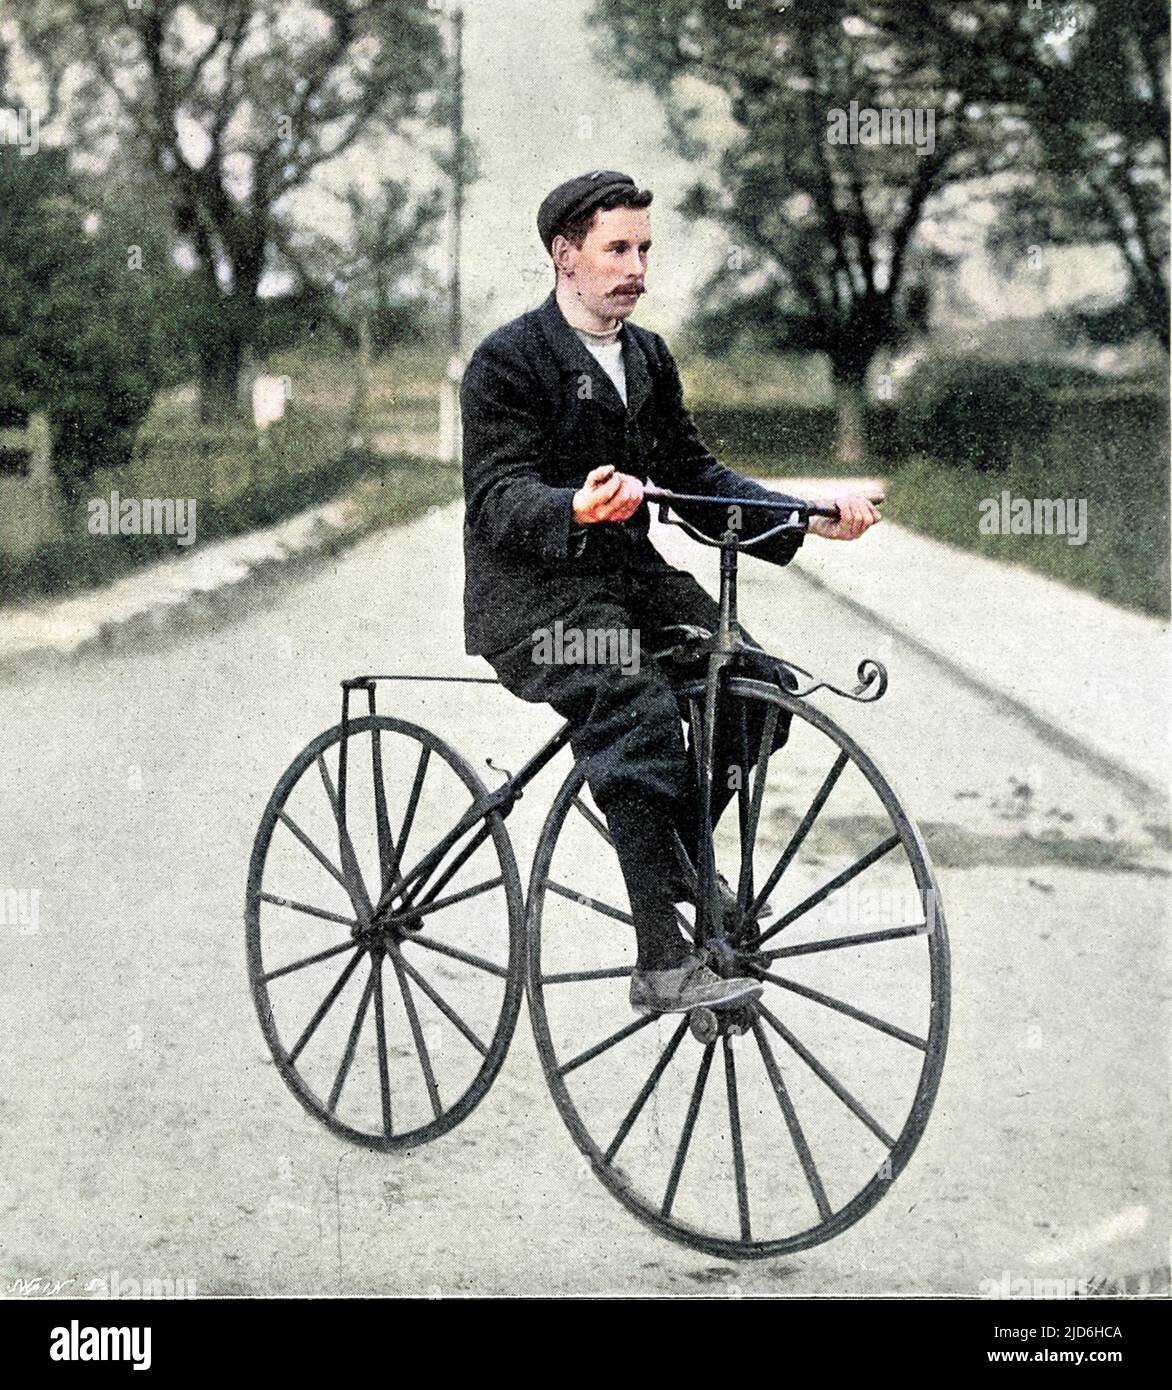 Ein Radfahrer auf einem 'Bone Shaker' Fahrrad der 1840s bis 1850s. Diese Art von Fahrrad war innovativ bei der Verwendung von Pedalen, aber verdient seinen Namen durch die Verwendung von Massivholz oder Metallrädern. Kolorierte Version von: 10218880 Datum: 1840s Stockfoto